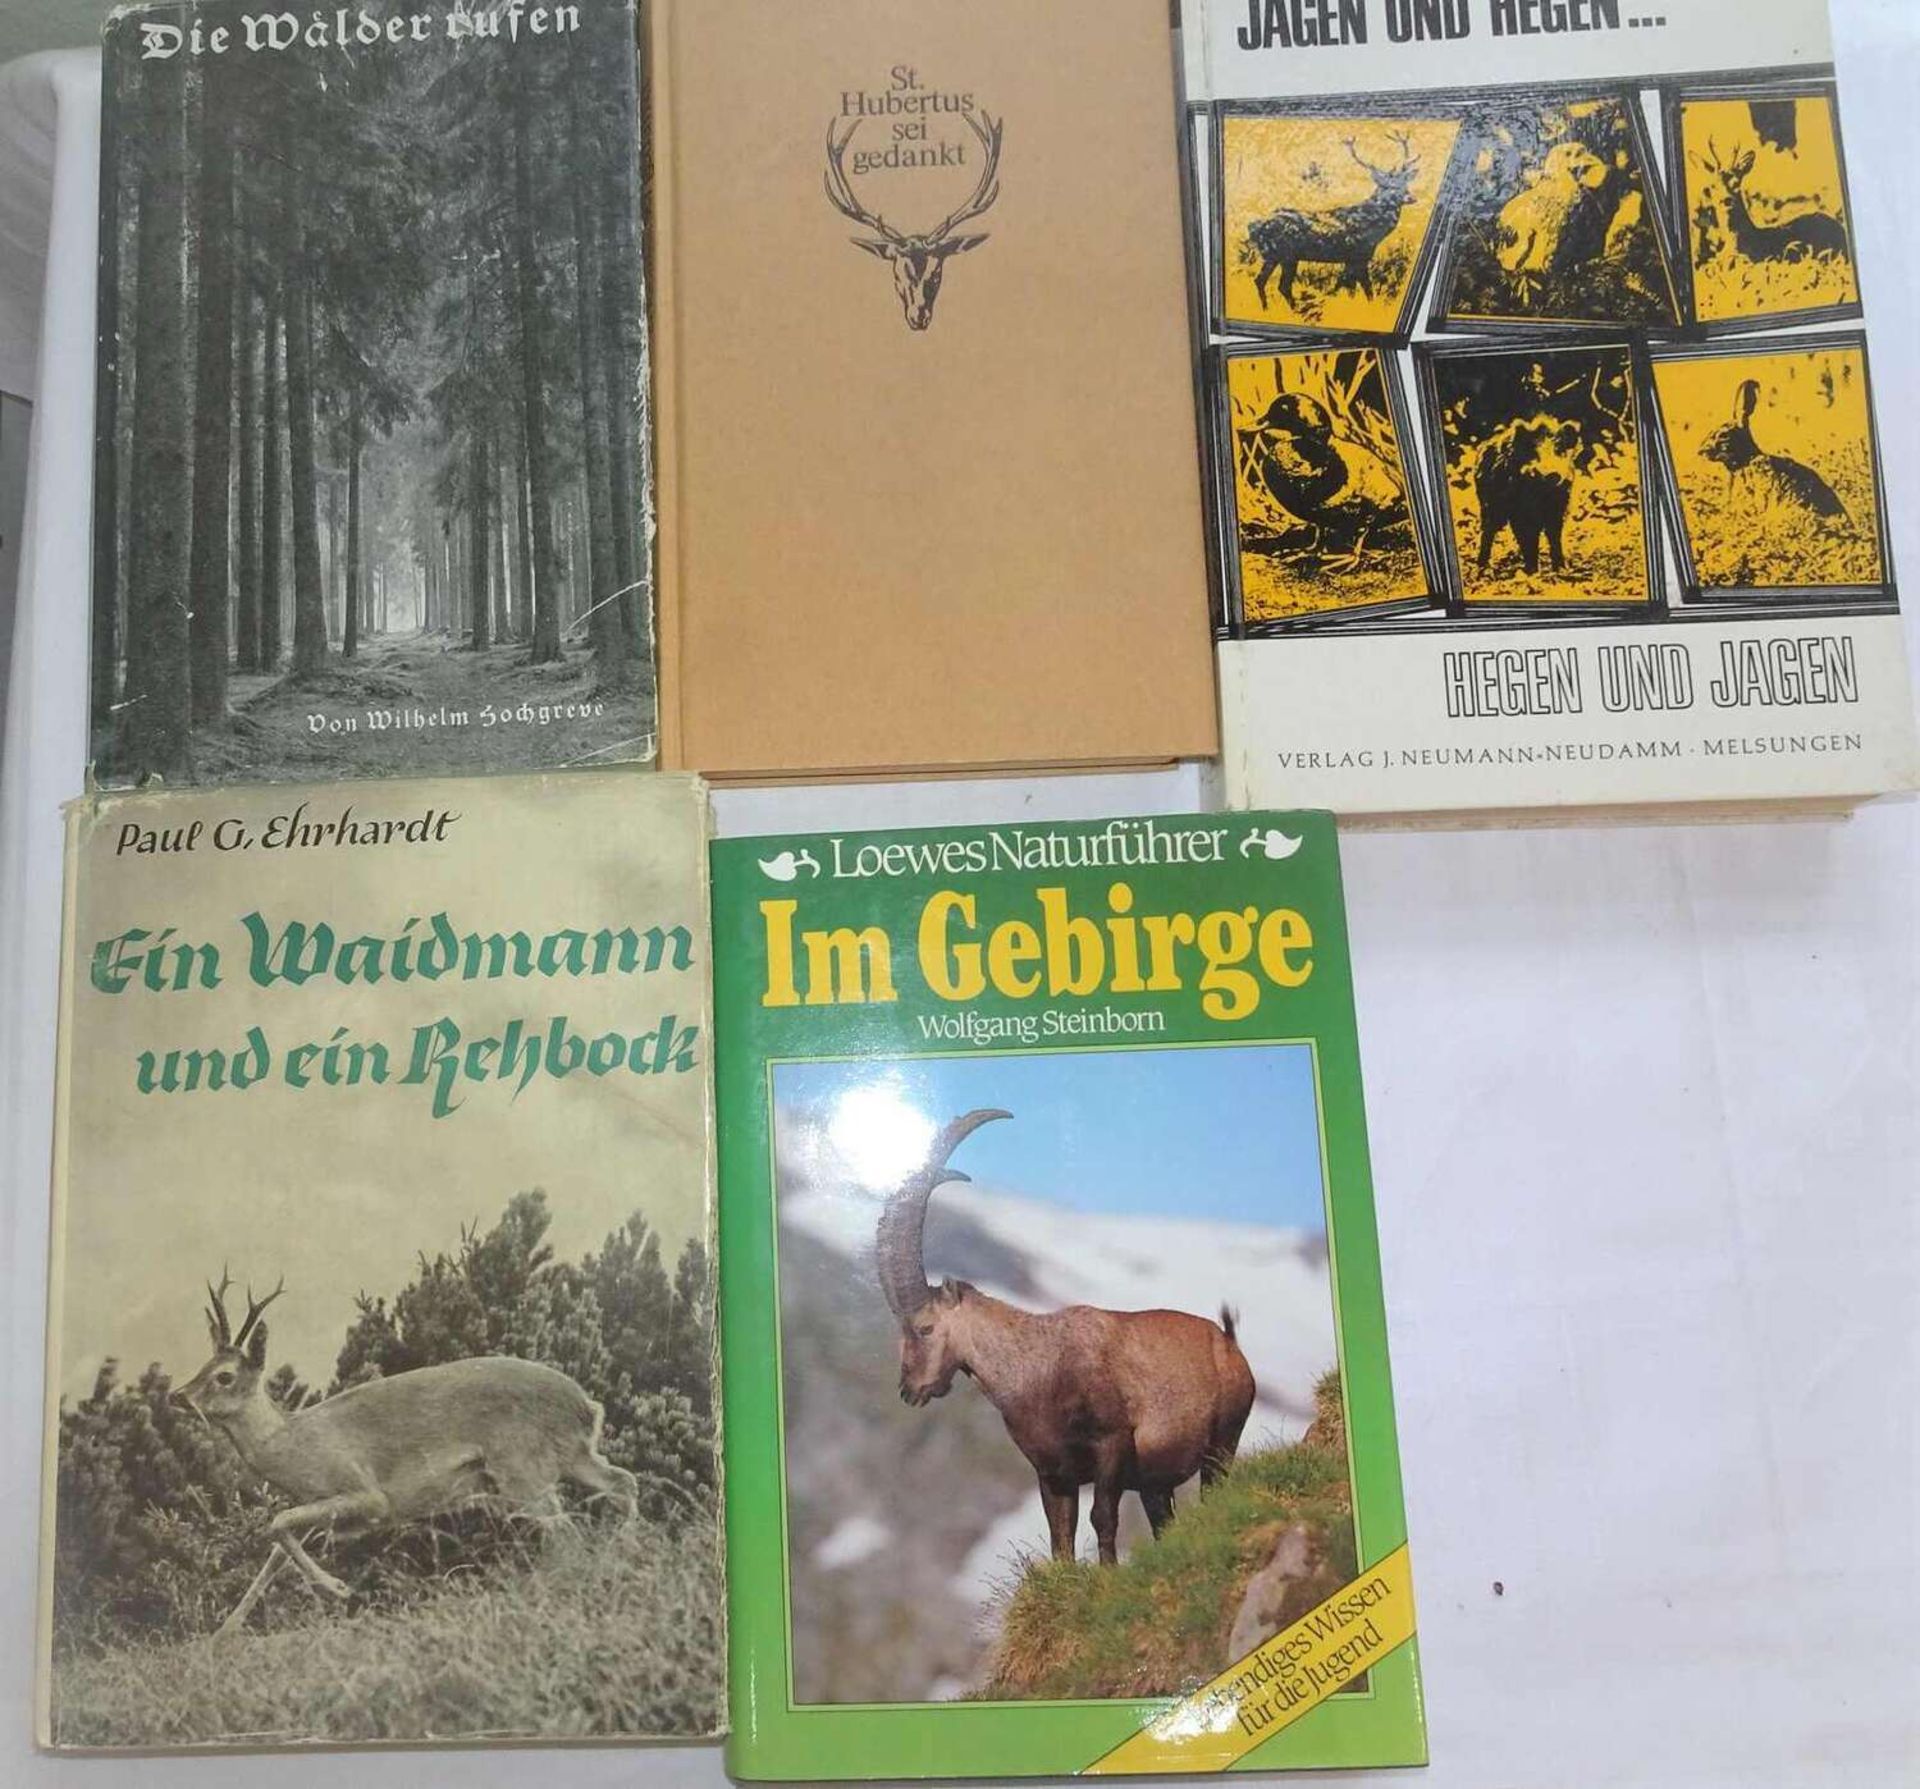 Lot Bücher zum Thema Jagd, dabei "Im Gebirge", "Jagen und Hegen", etc.Lot of books on hunting, inc